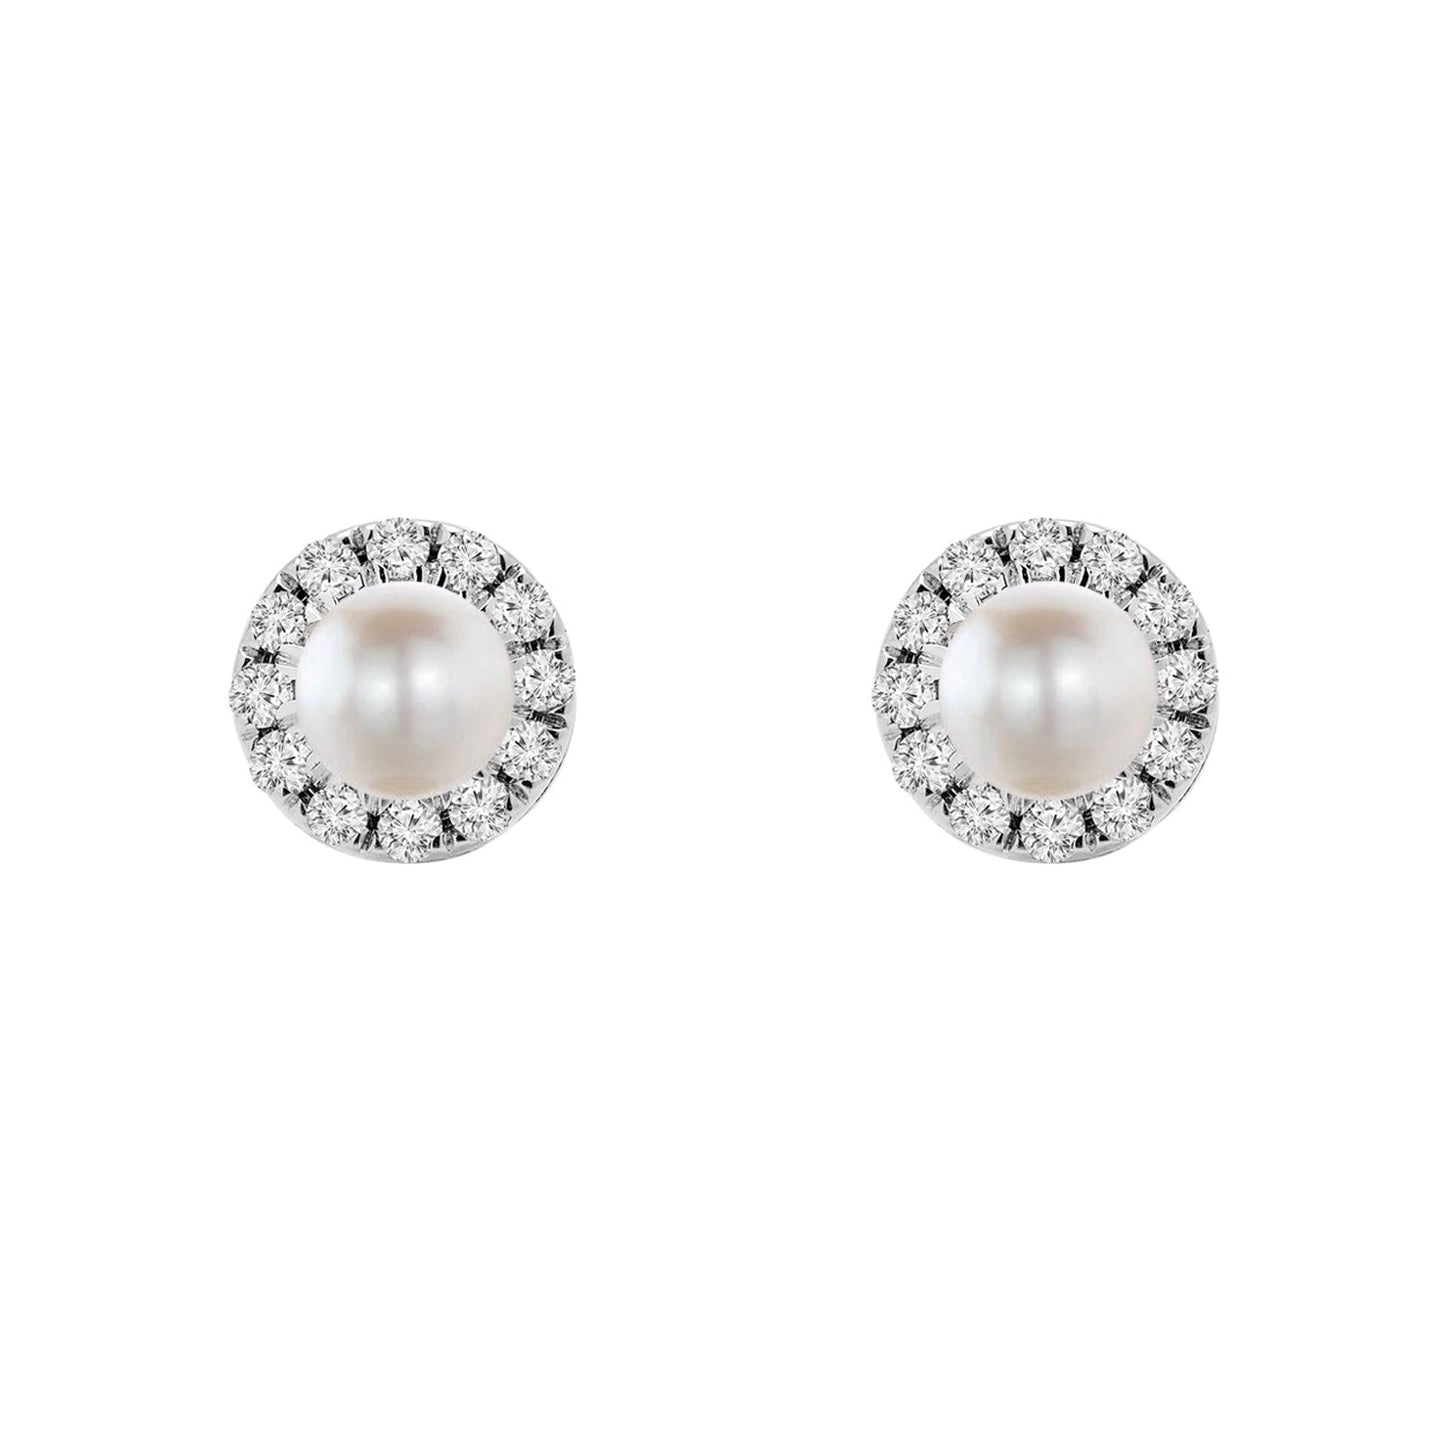 Birthstone Halo Earrings - Pearl